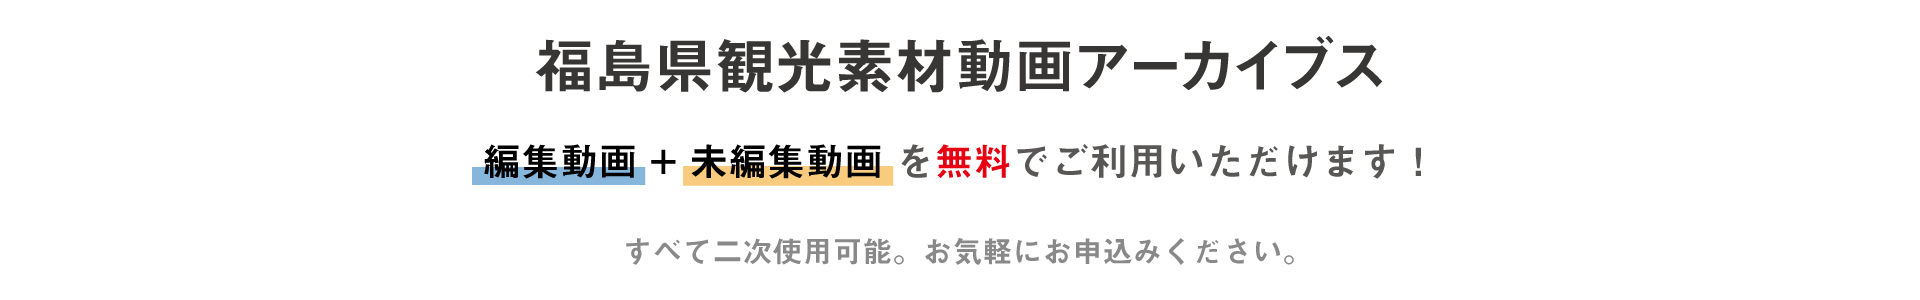 福島県観光素材動画アーカイブスは、編集動画+未編集動画を無料でご利用いただけます！すべて二次使用可能。お気軽にお申込みください。